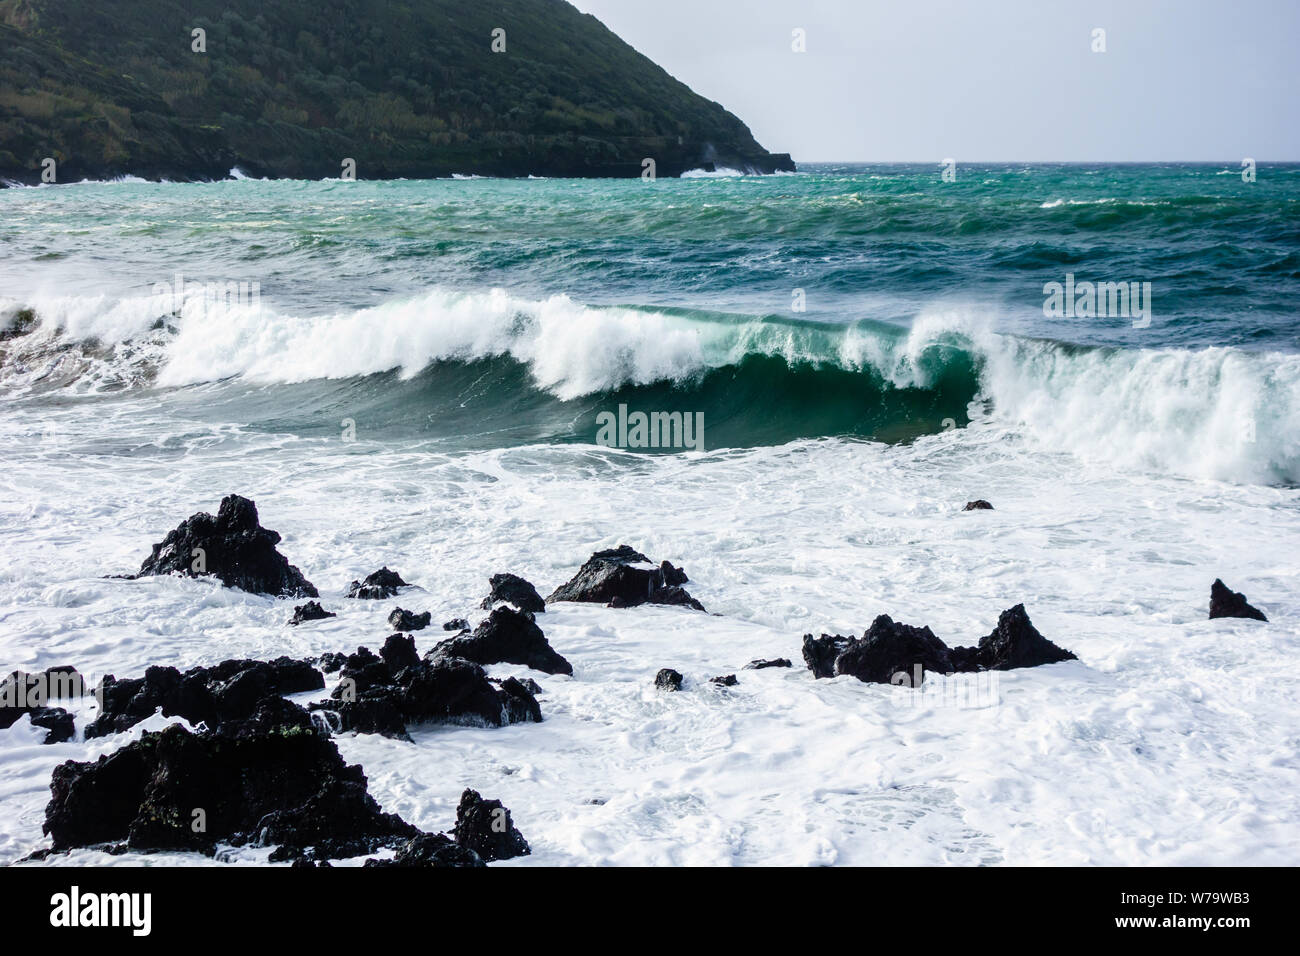 Potente oceano onde che si infrangono sulle frastagliate rocce di basalto con isola in background, nelle Azzorre, Portogallo. Foto Stock